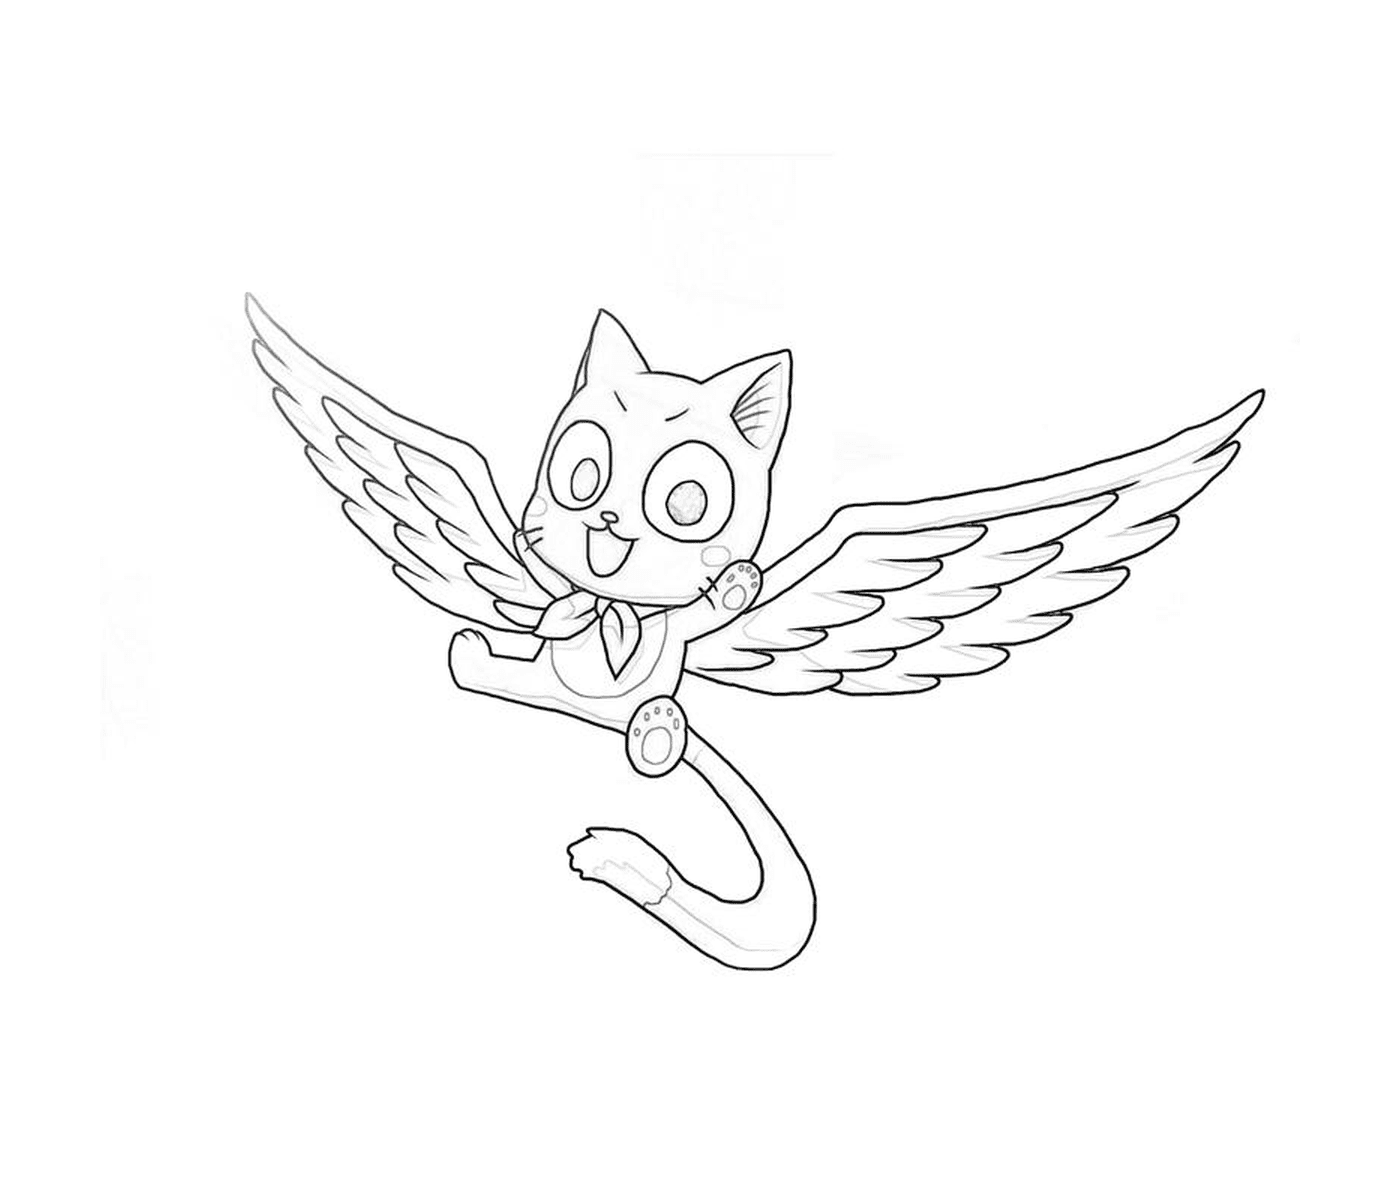  Un gato volador con alas 